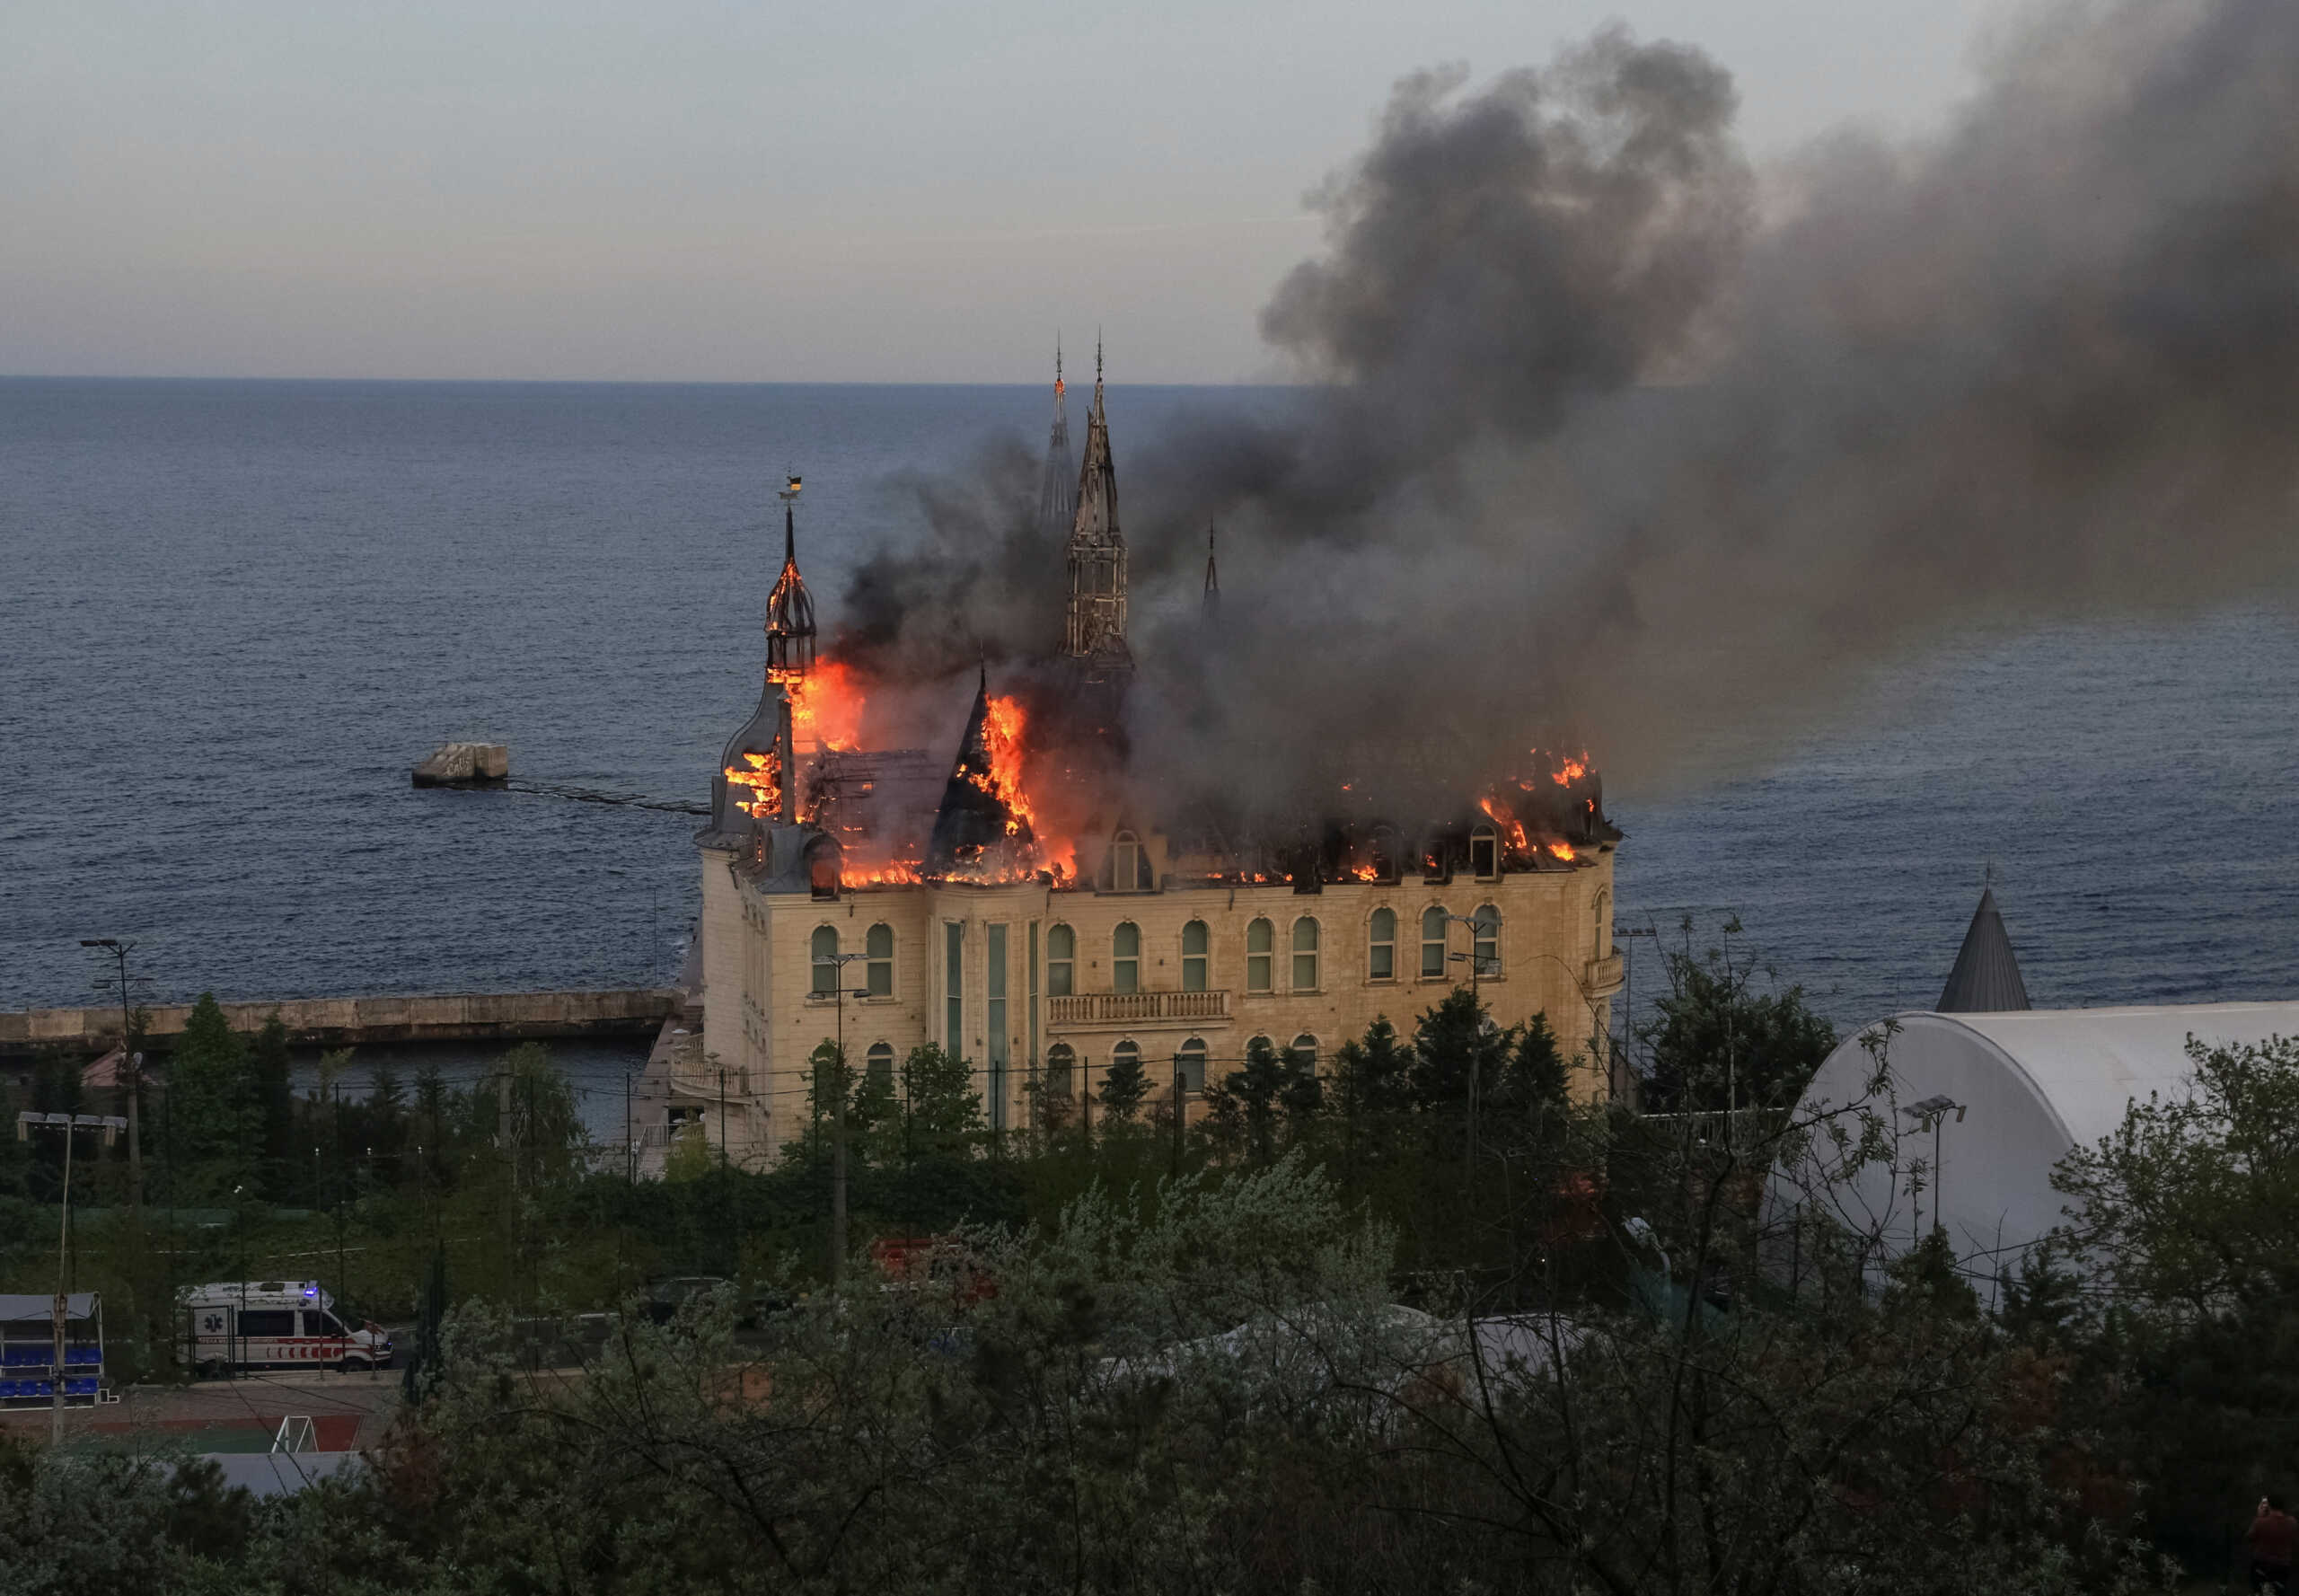 Τεράστιες ζημιές στο «κάστρο του Χάρι Πότερ» στην Οδησσό μετά από ρωσική επίθεση με πυραύλους